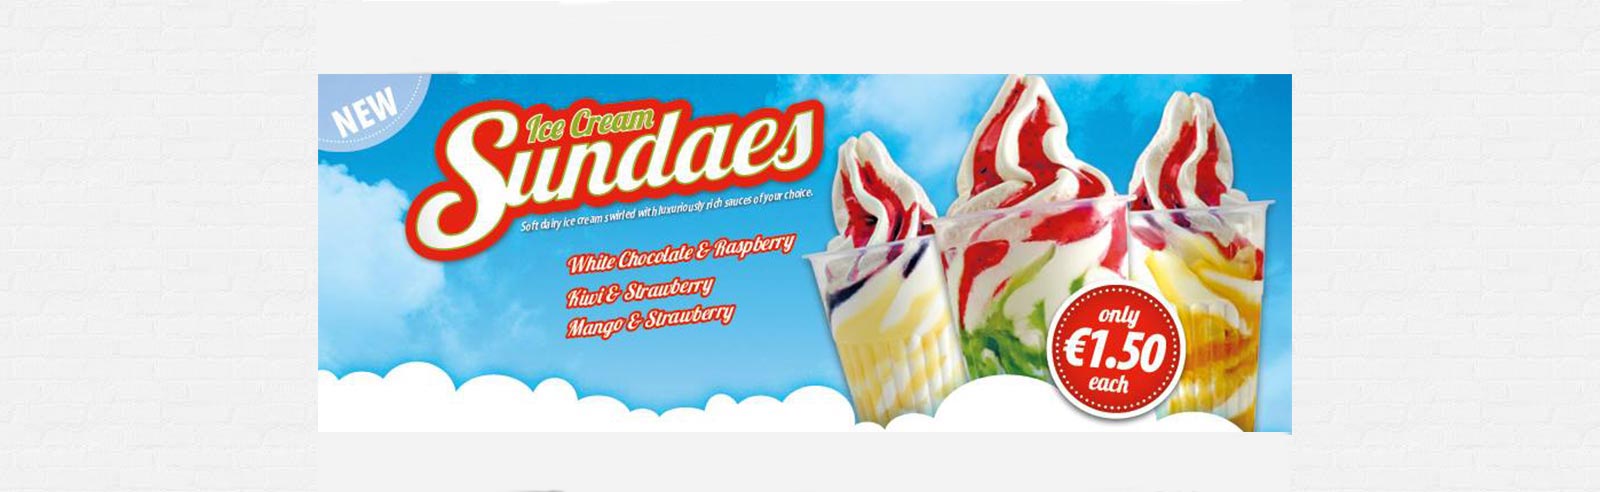 New Ice-Cream Sundae’s